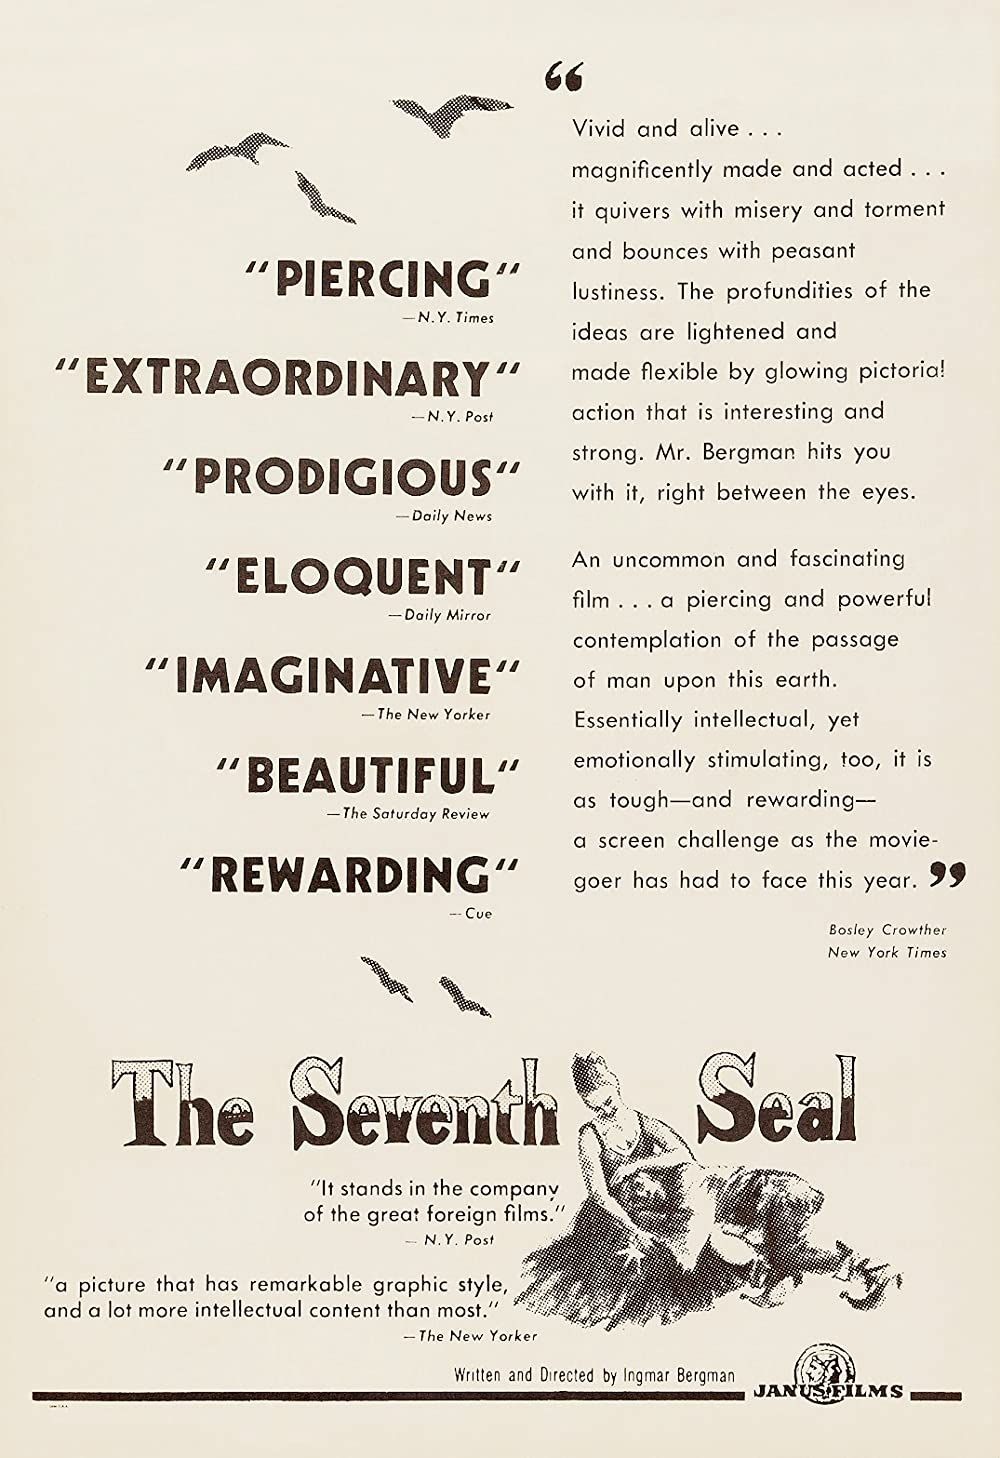 Rangkuman dan Ulasan Film The Seventh Seal